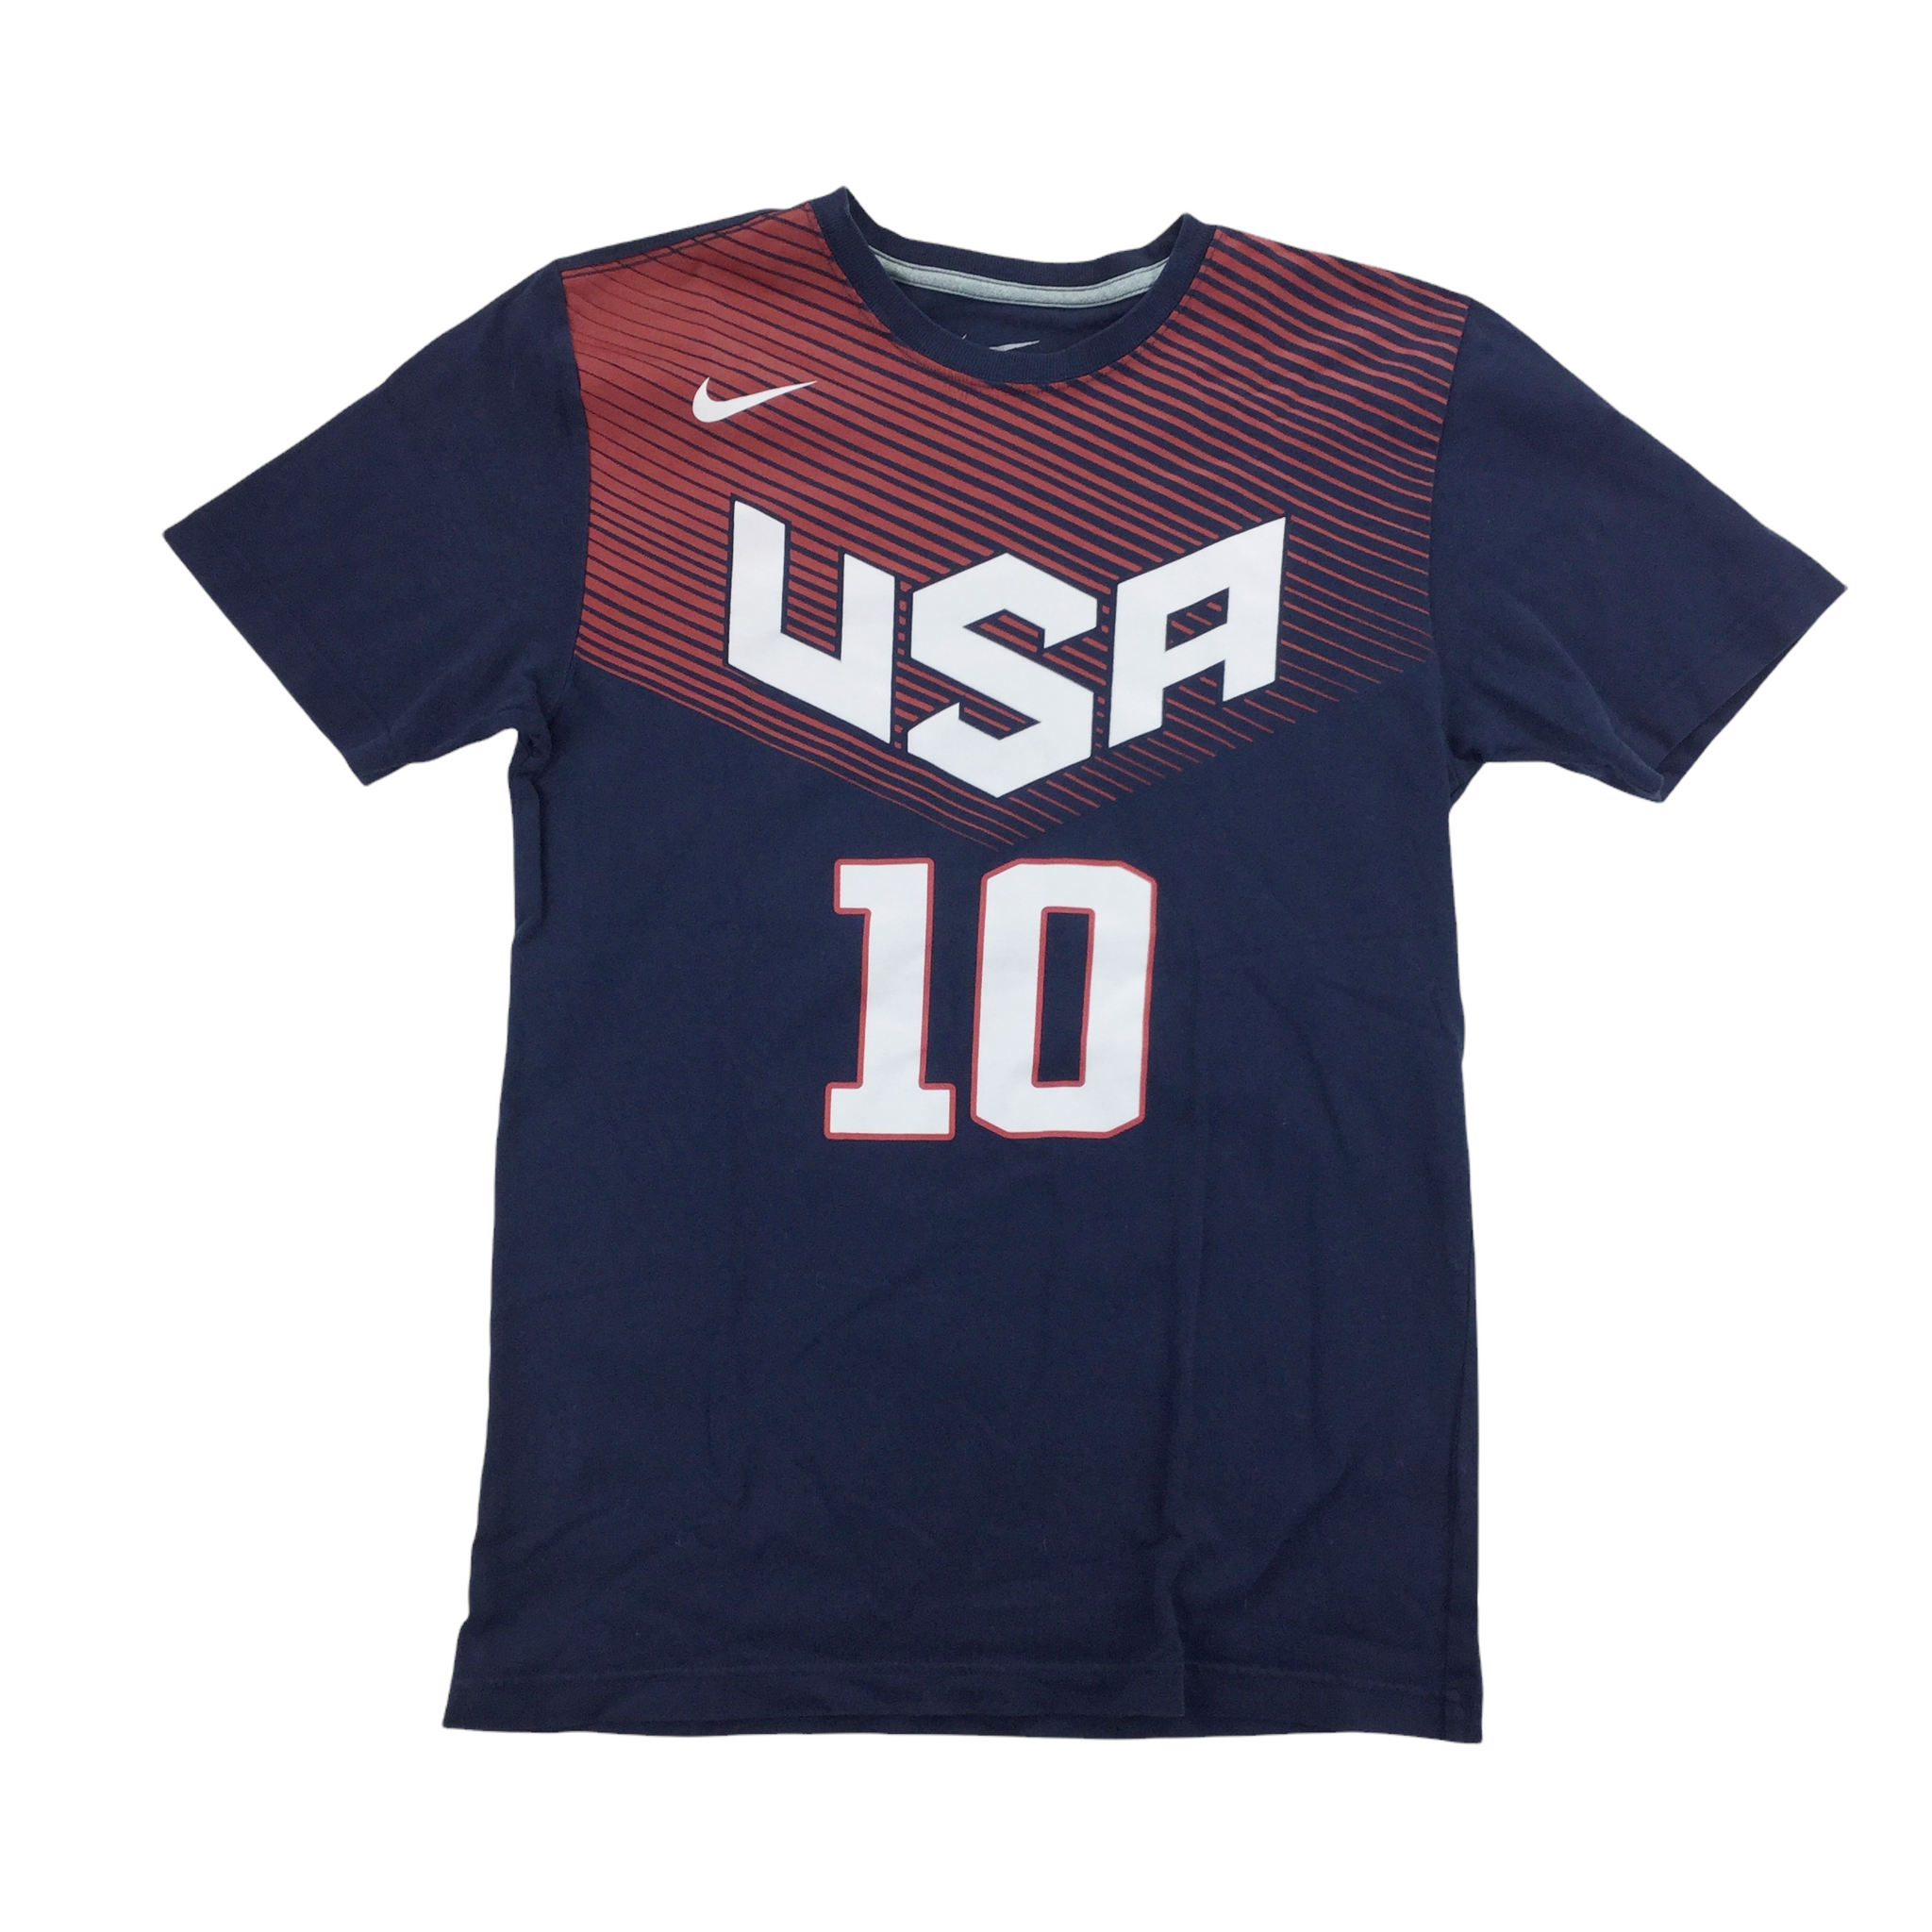 Nike USA Irving T-Shirt - Small Premium OLESSTORE